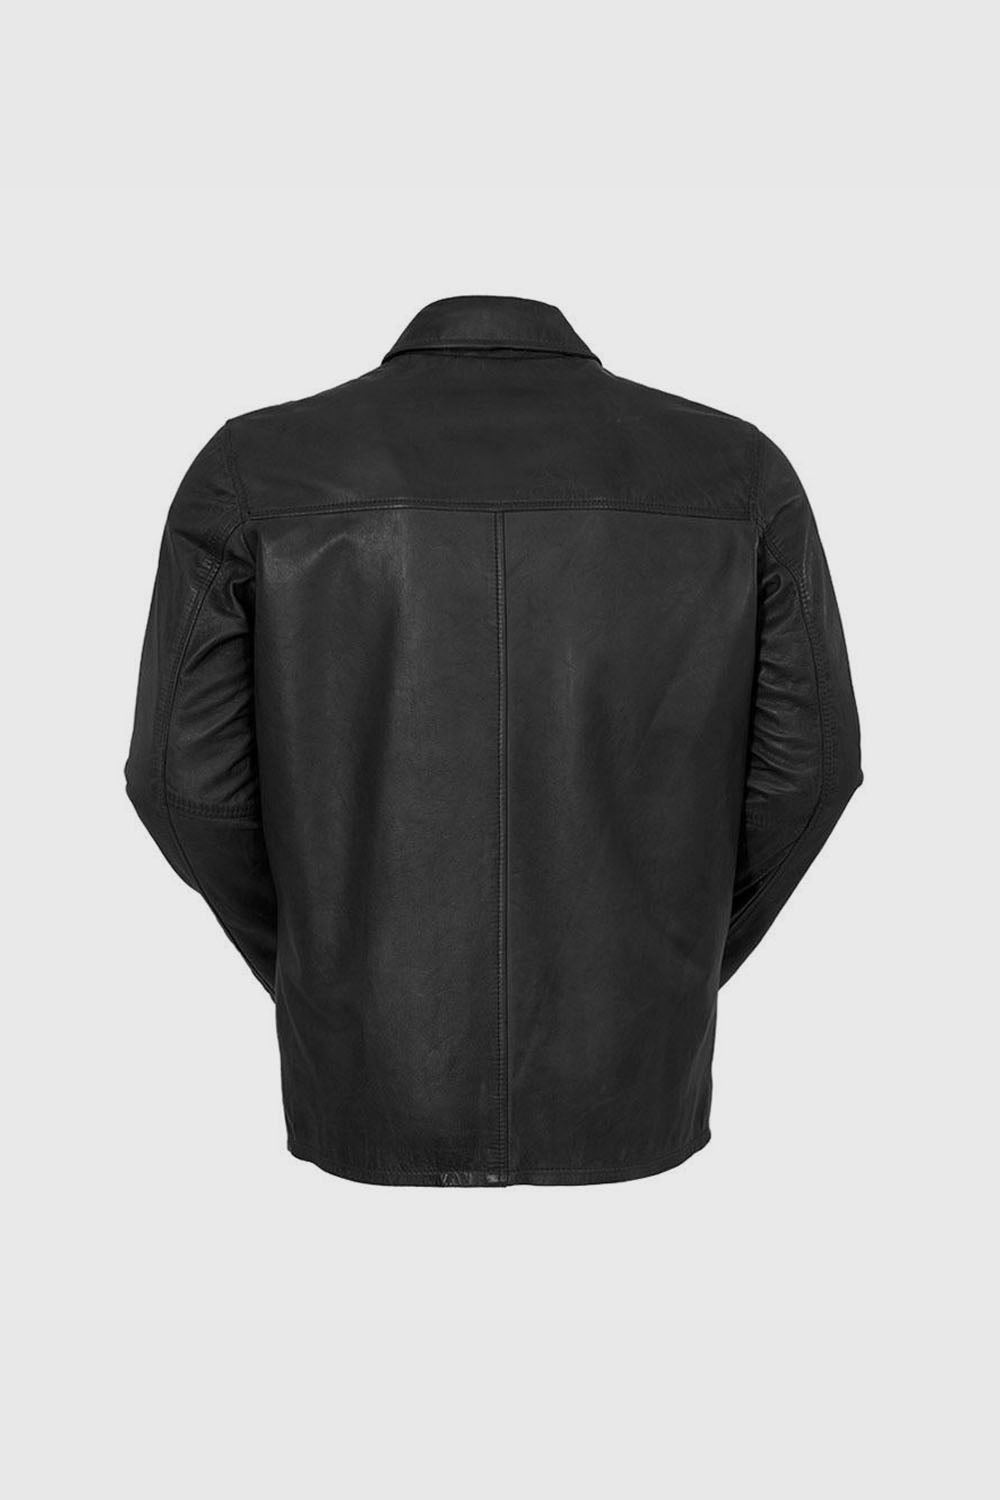 Indiana Men's Leather Jacket Black (POS) Men's Leather Jacket Whet Blu NYC   